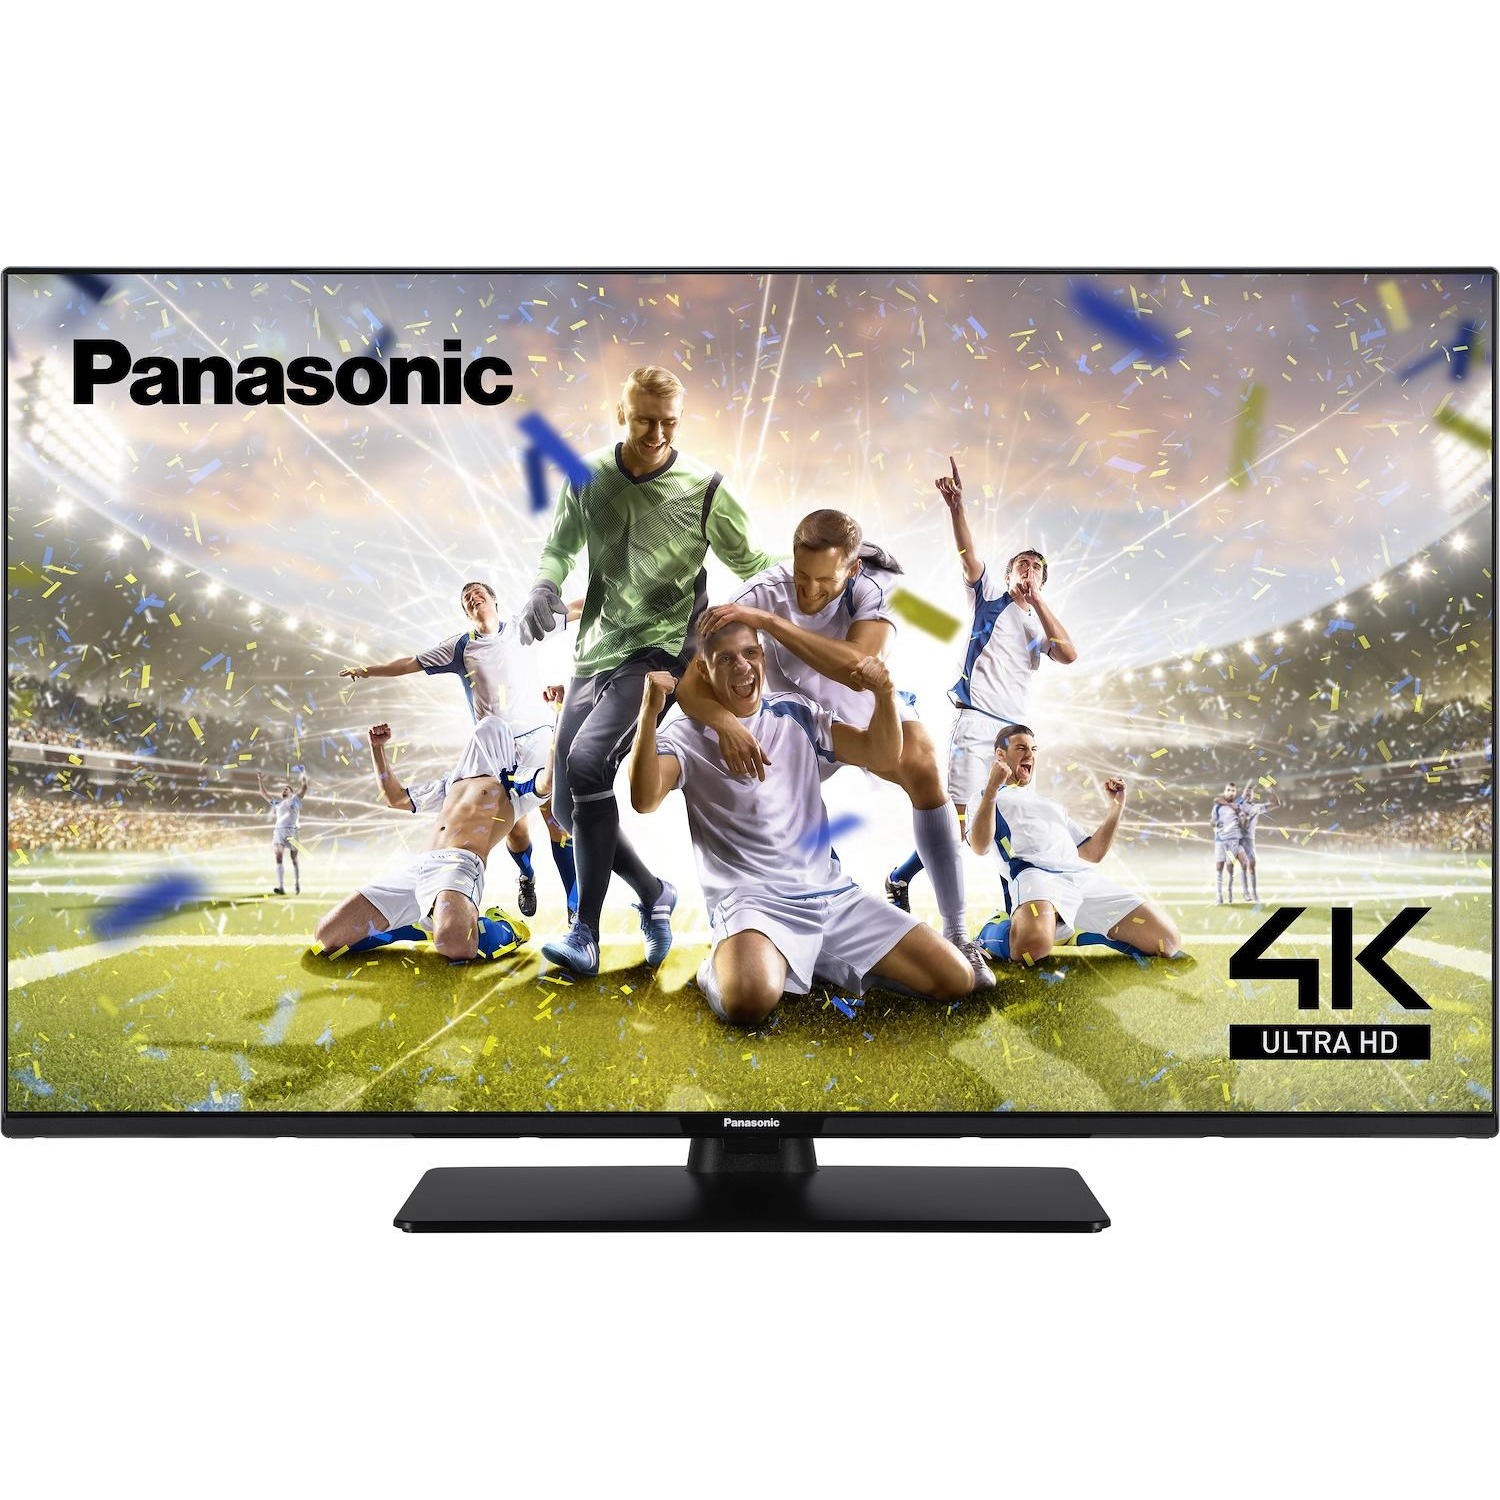 Immagine per TV LED Panasonic 43MX600 Calibrato 4K e UHD da DIMOStore